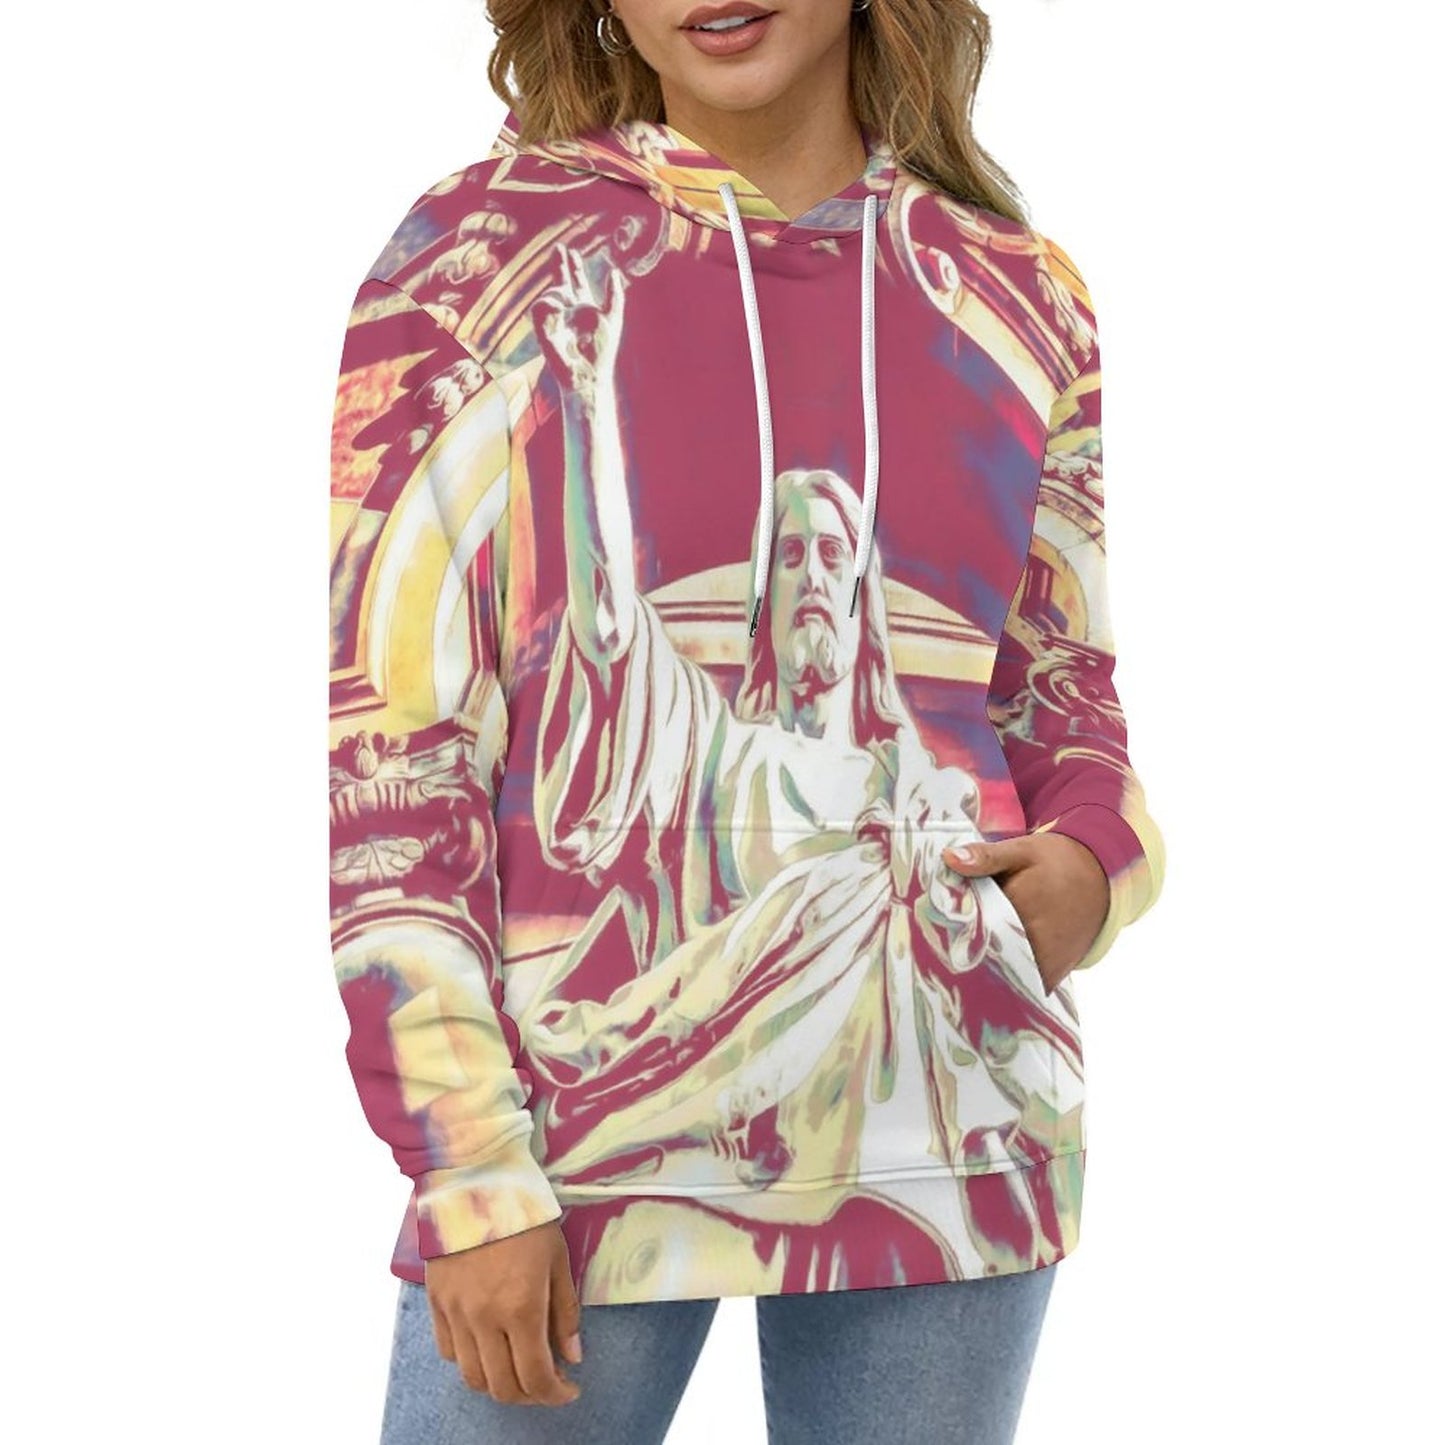 Online DIY Adult Hoodie Sweater Jesus